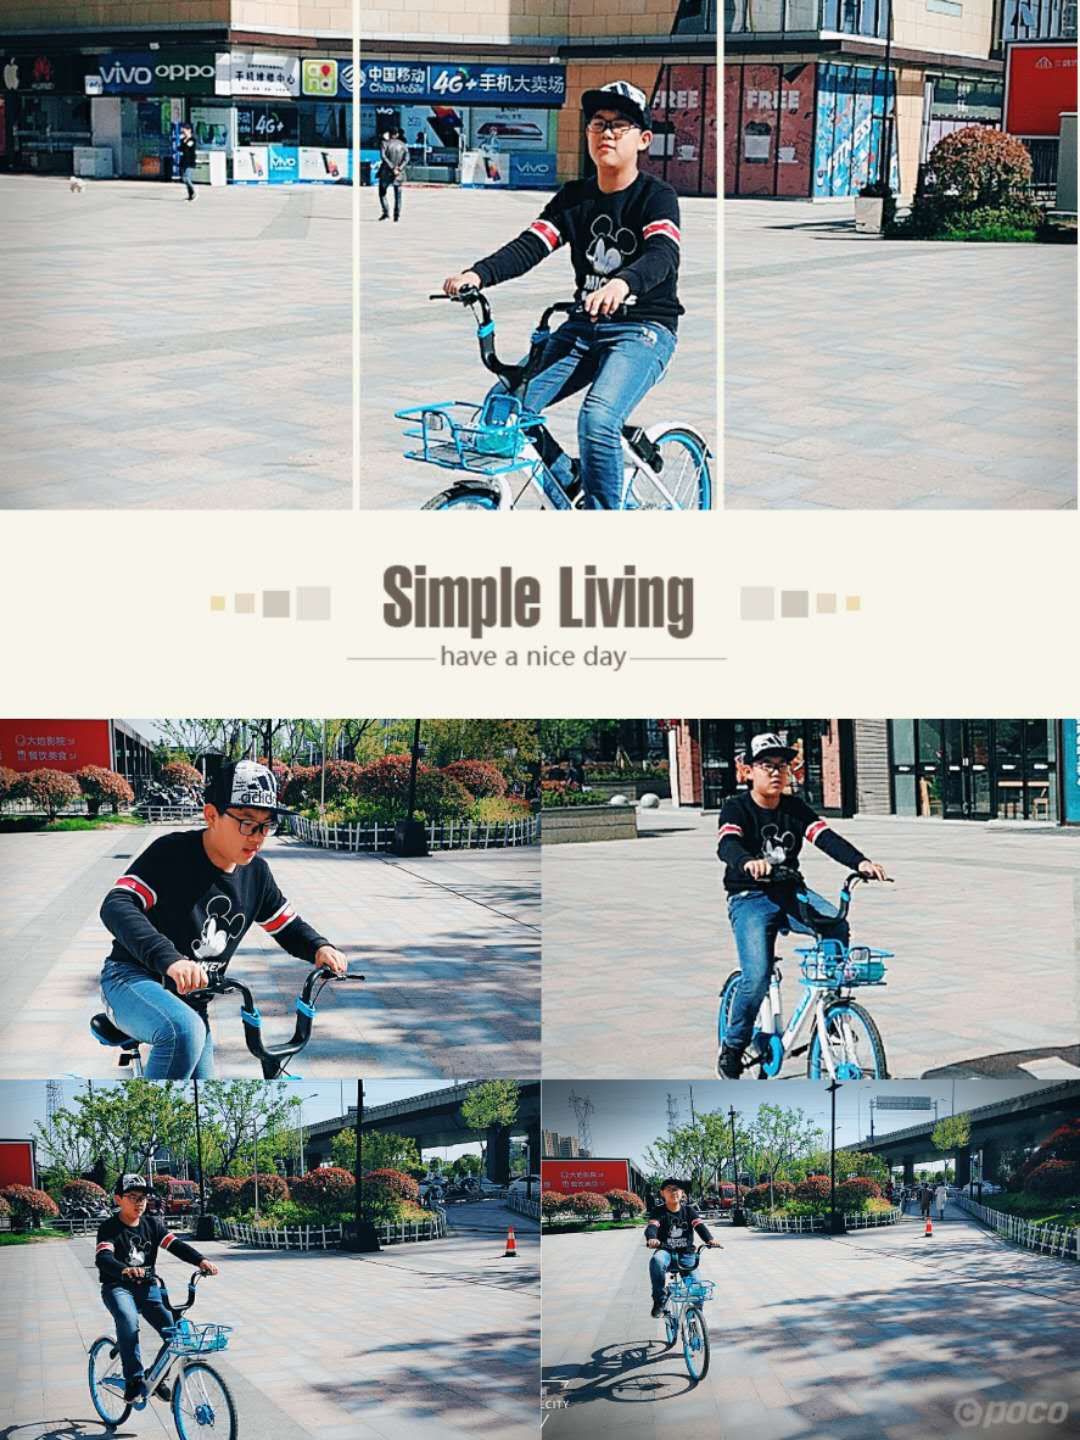 金东浩成长日记练习单车技术照片IMG_9043.JPG